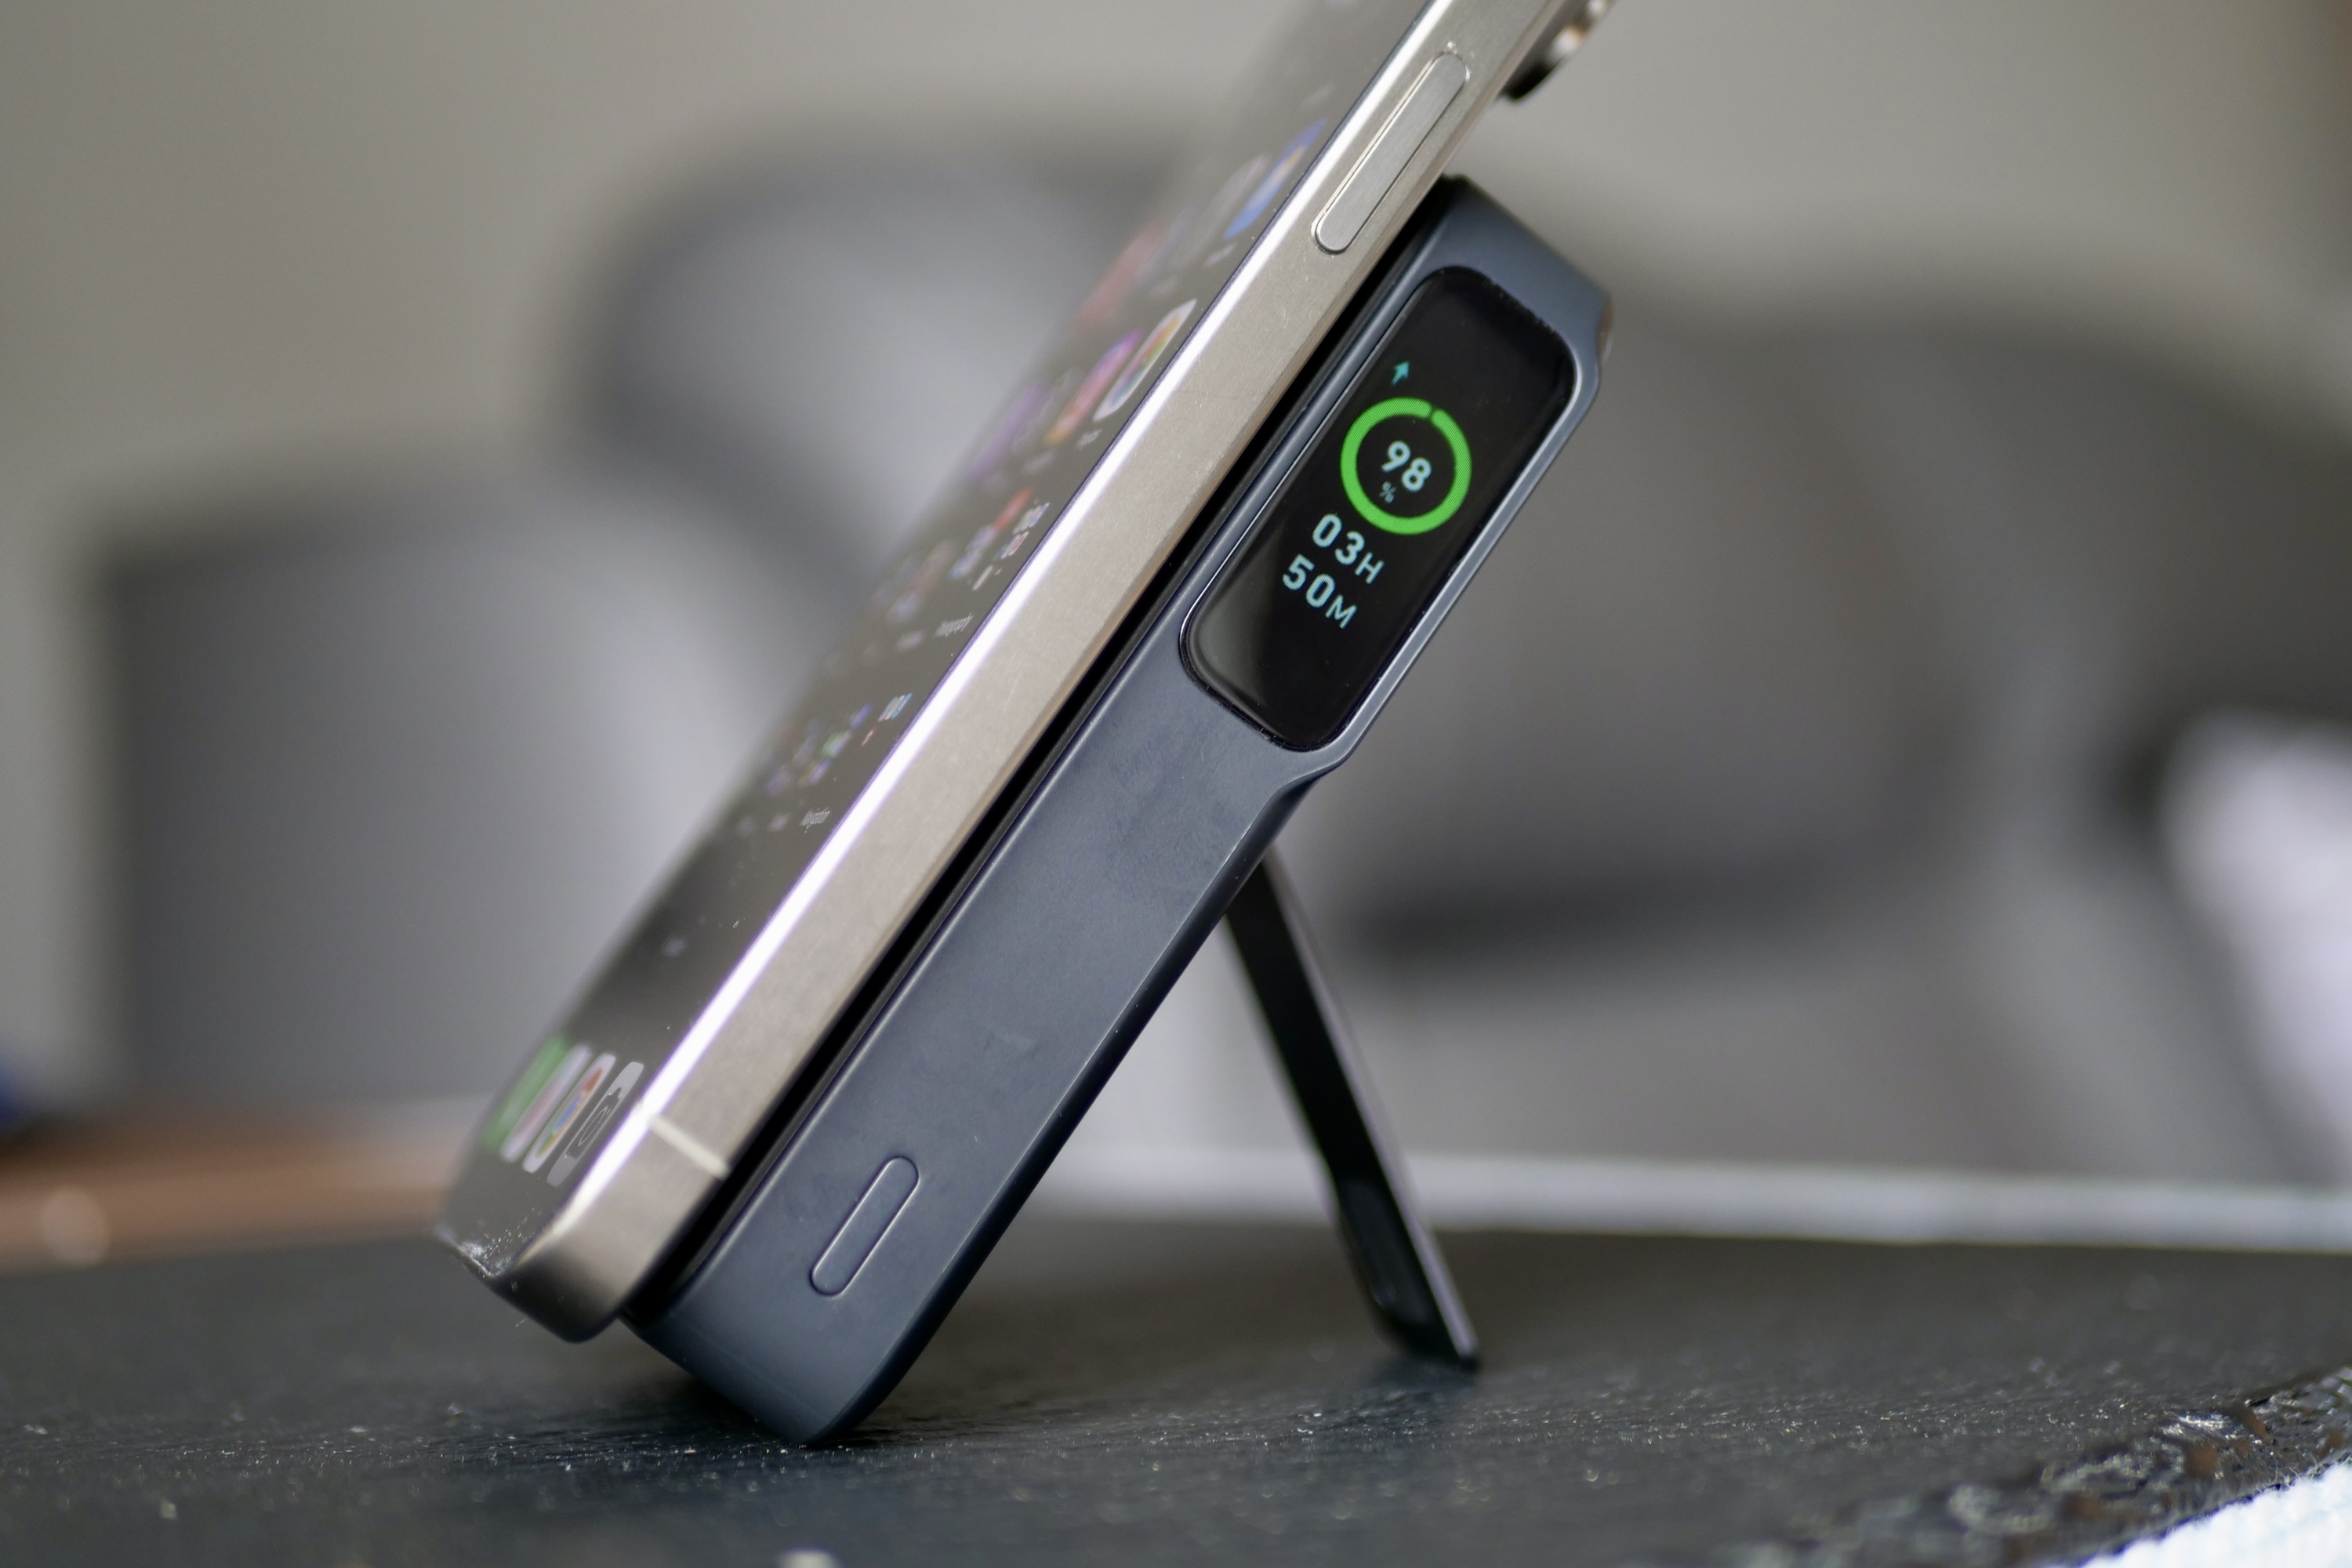 iPhone 15 Pro Max को एंकर मैगगो पावर बैंक द्वारा चार्ज किया जा रहा है।